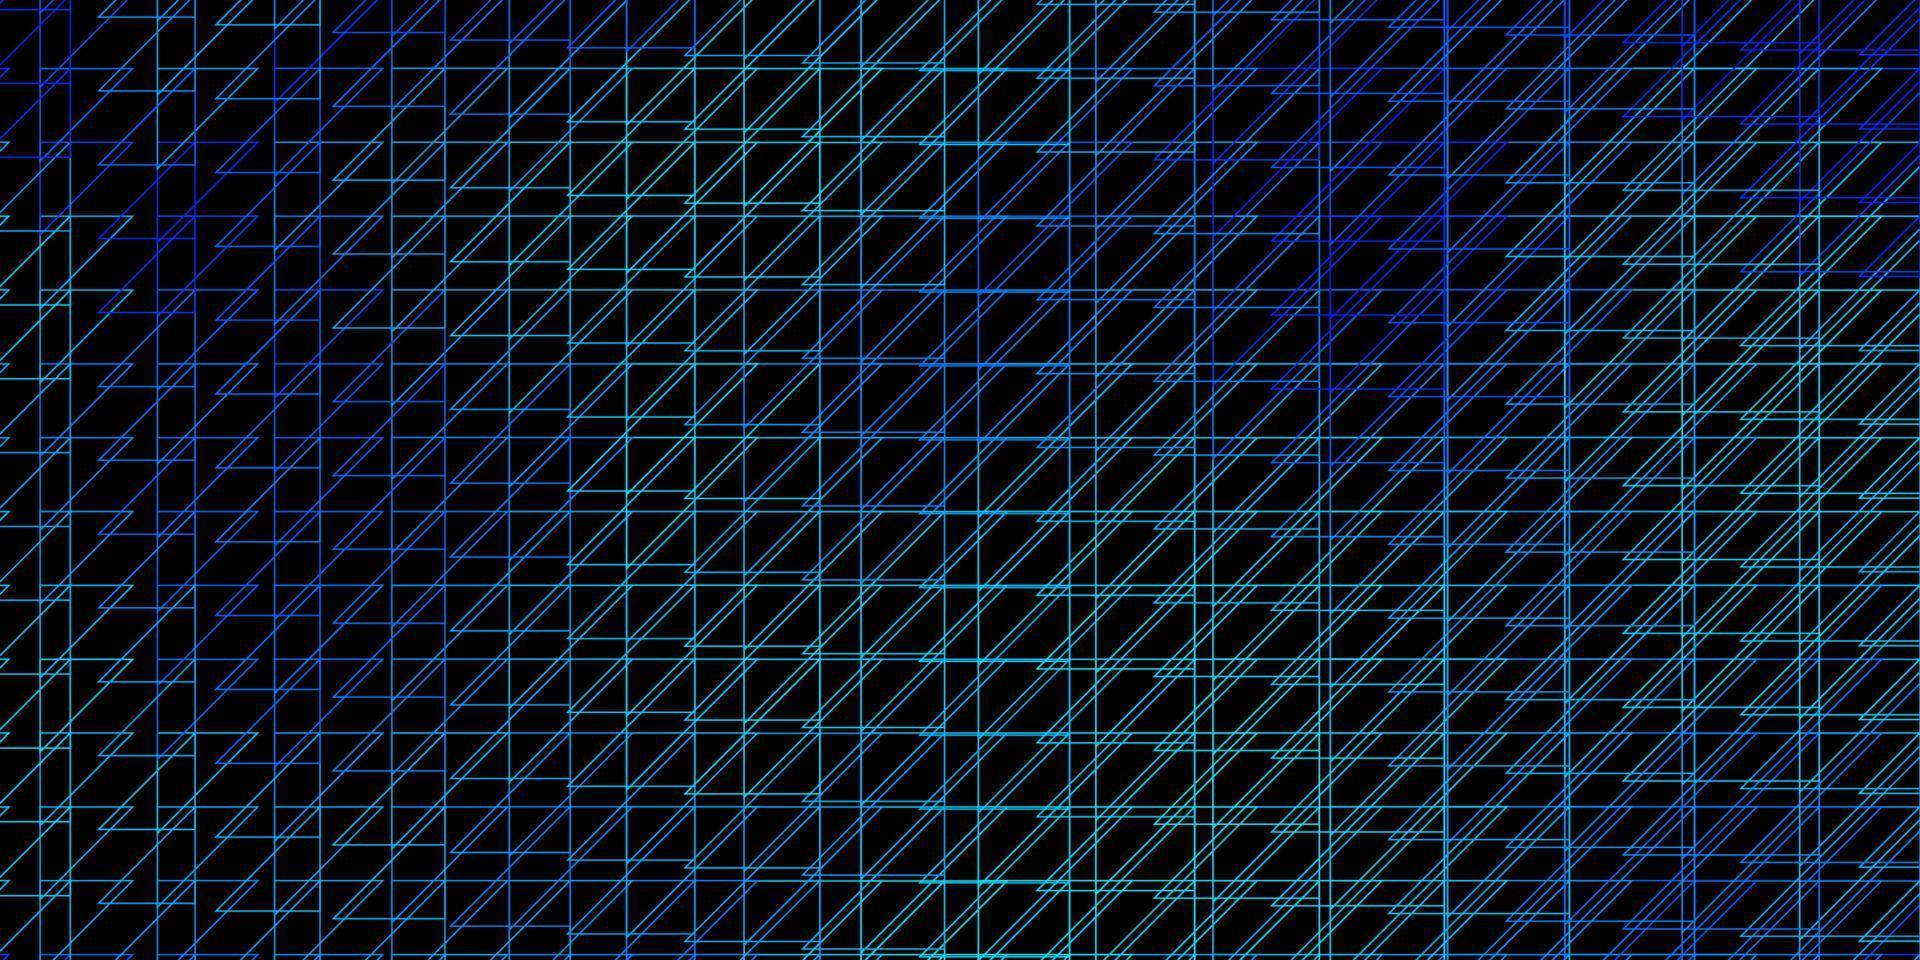 toile de fond de vecteur bleu foncé avec des lignes.